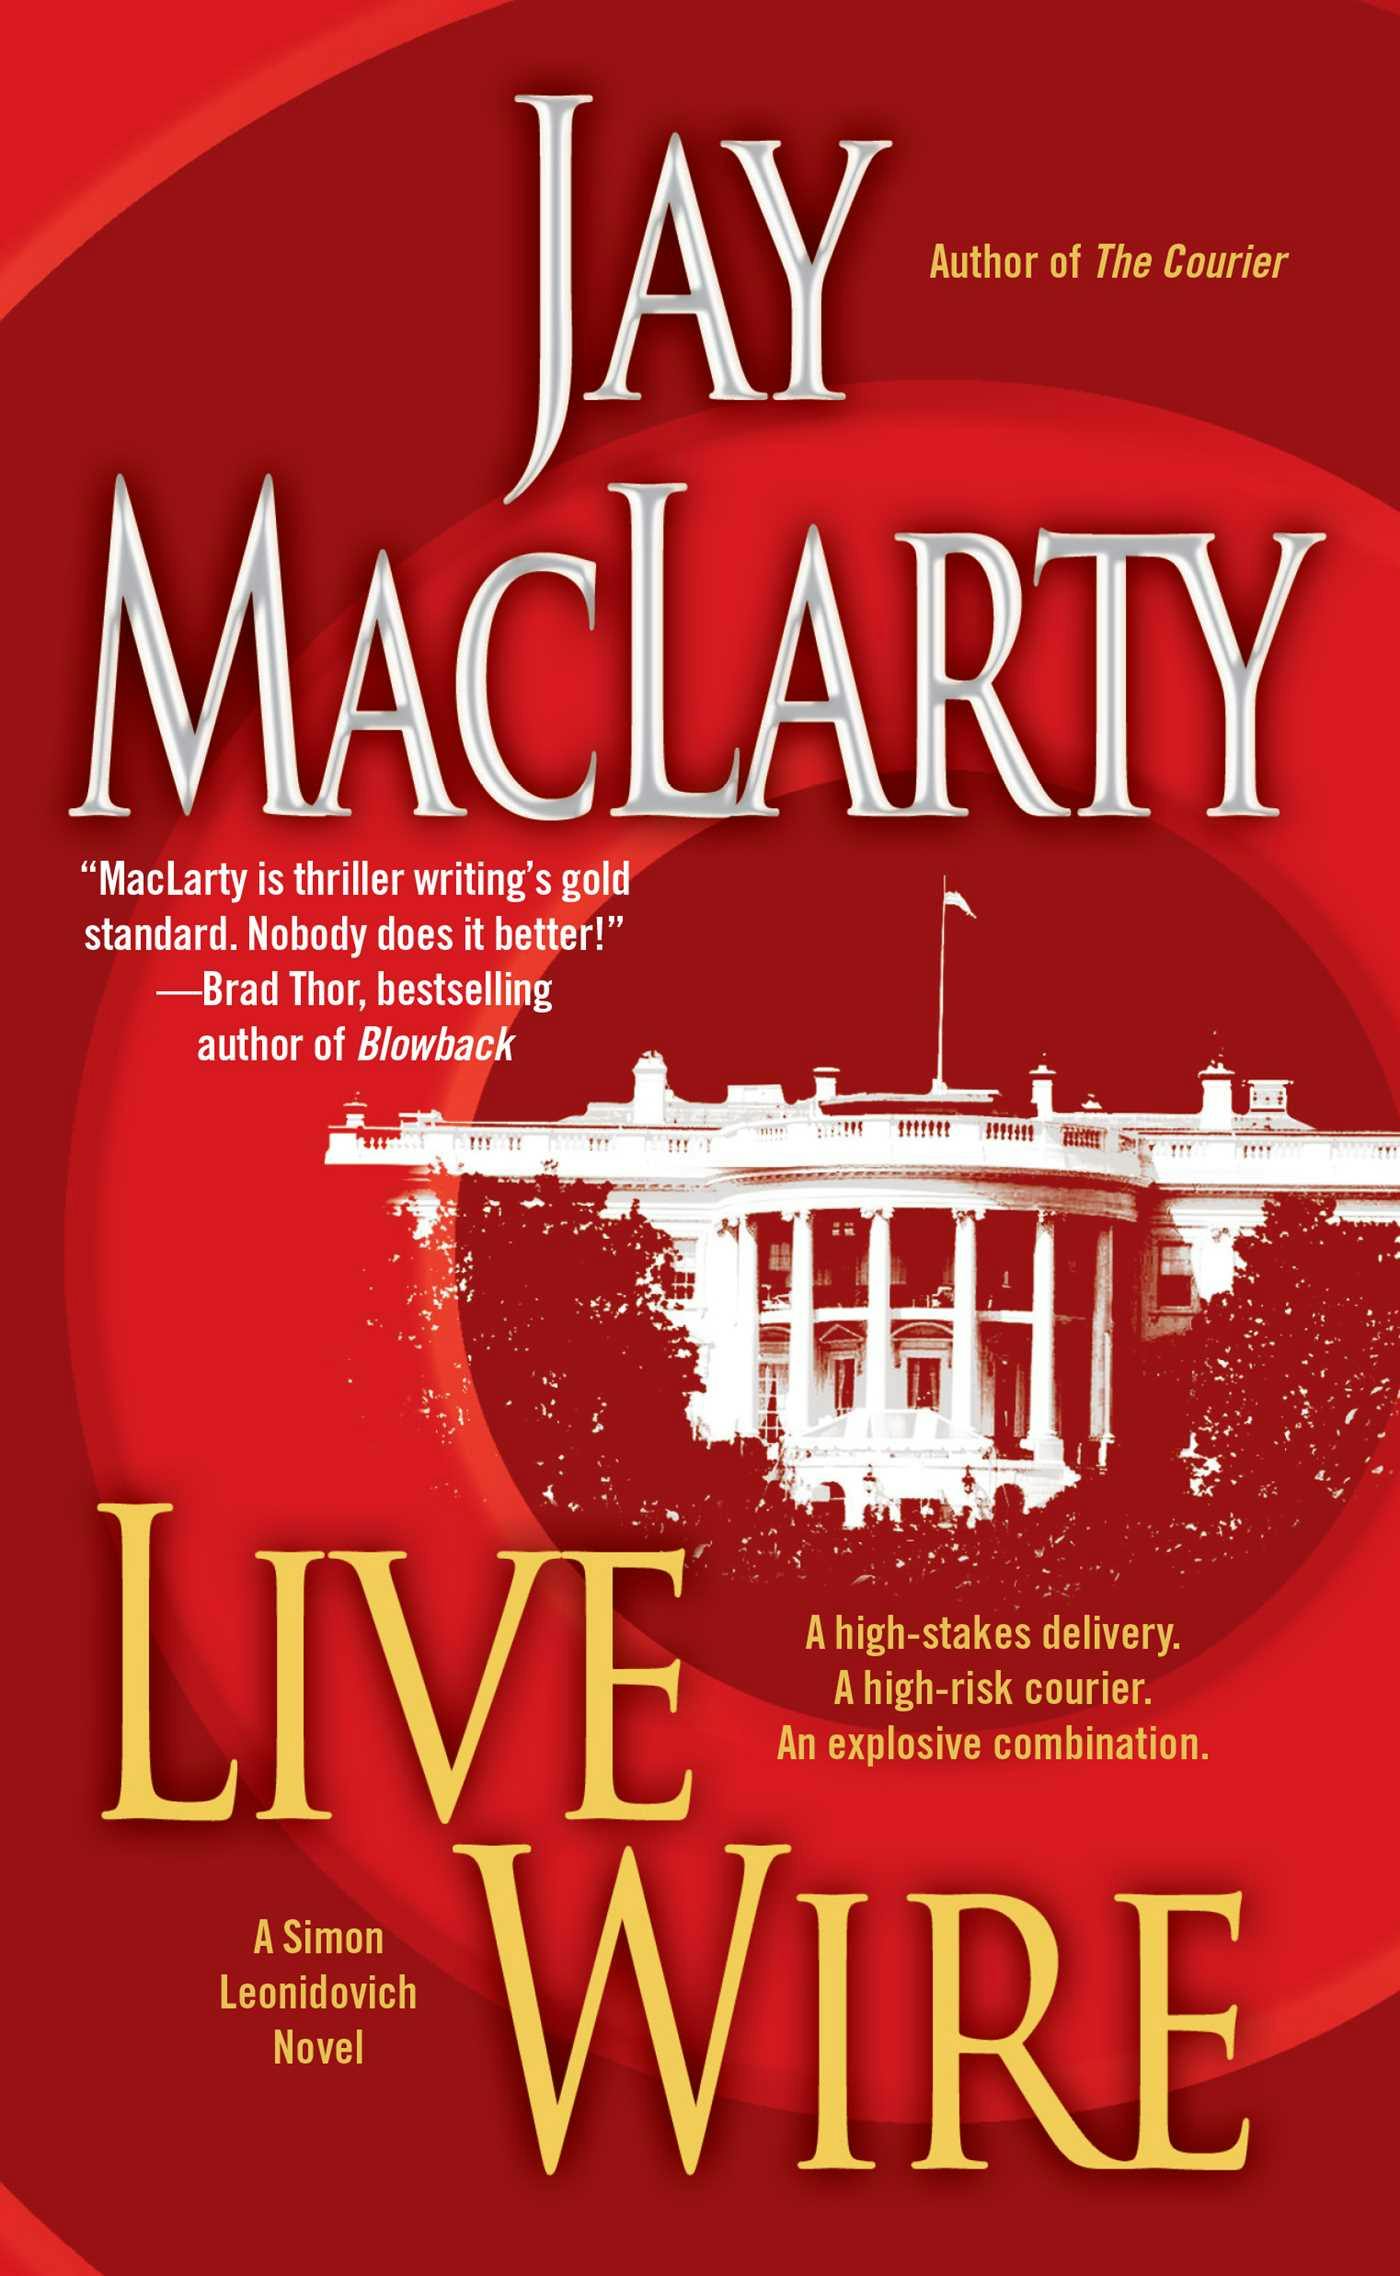 Live Wire: A Simon Leonidovich Novel - Jay MacLarty